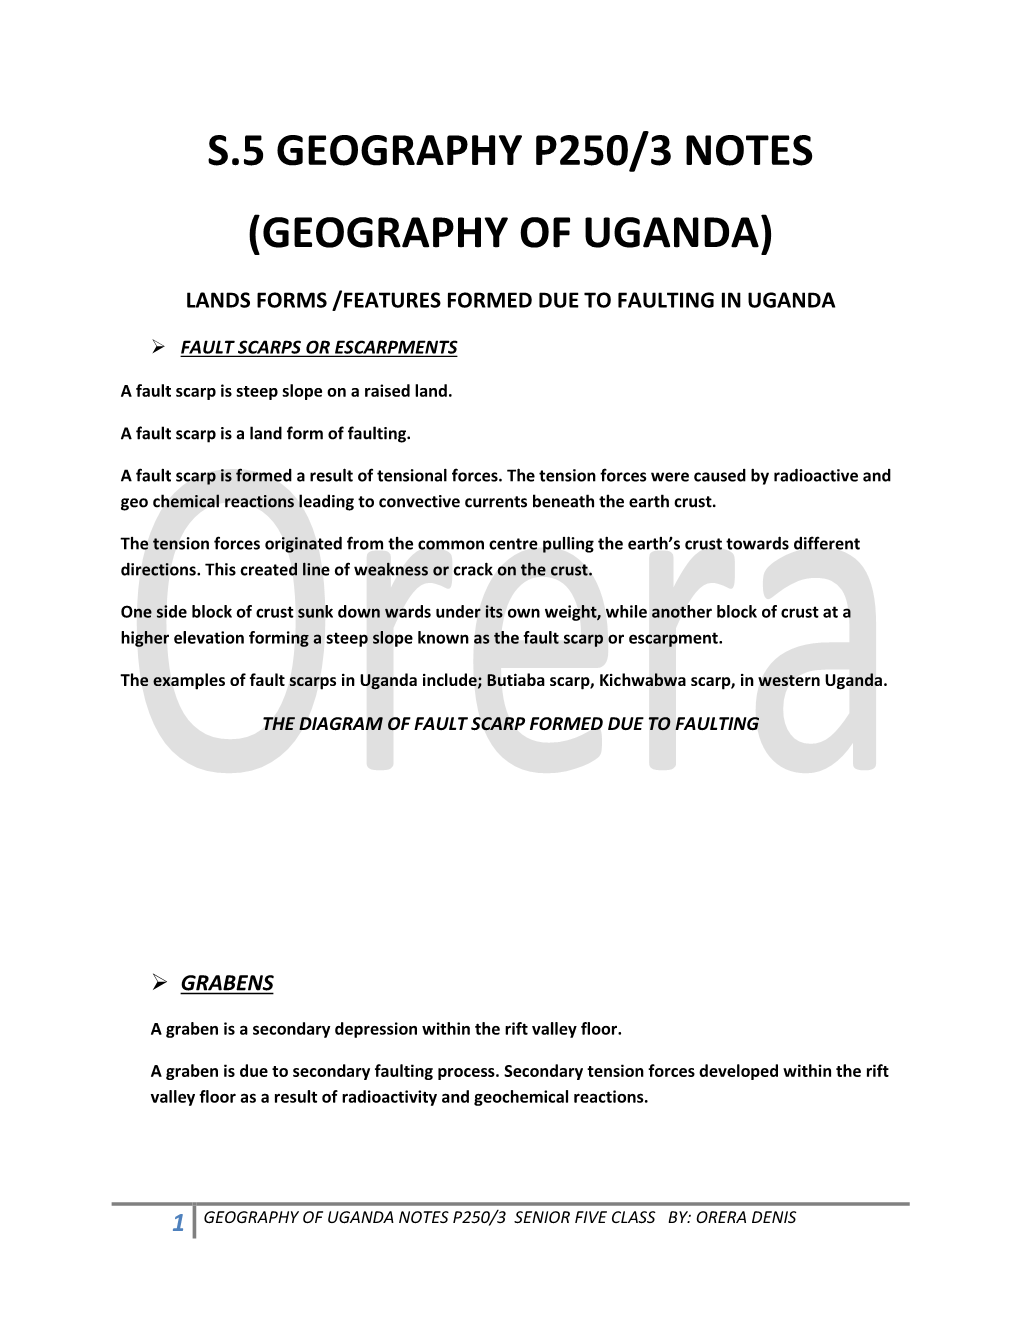 Geography of Uganda)